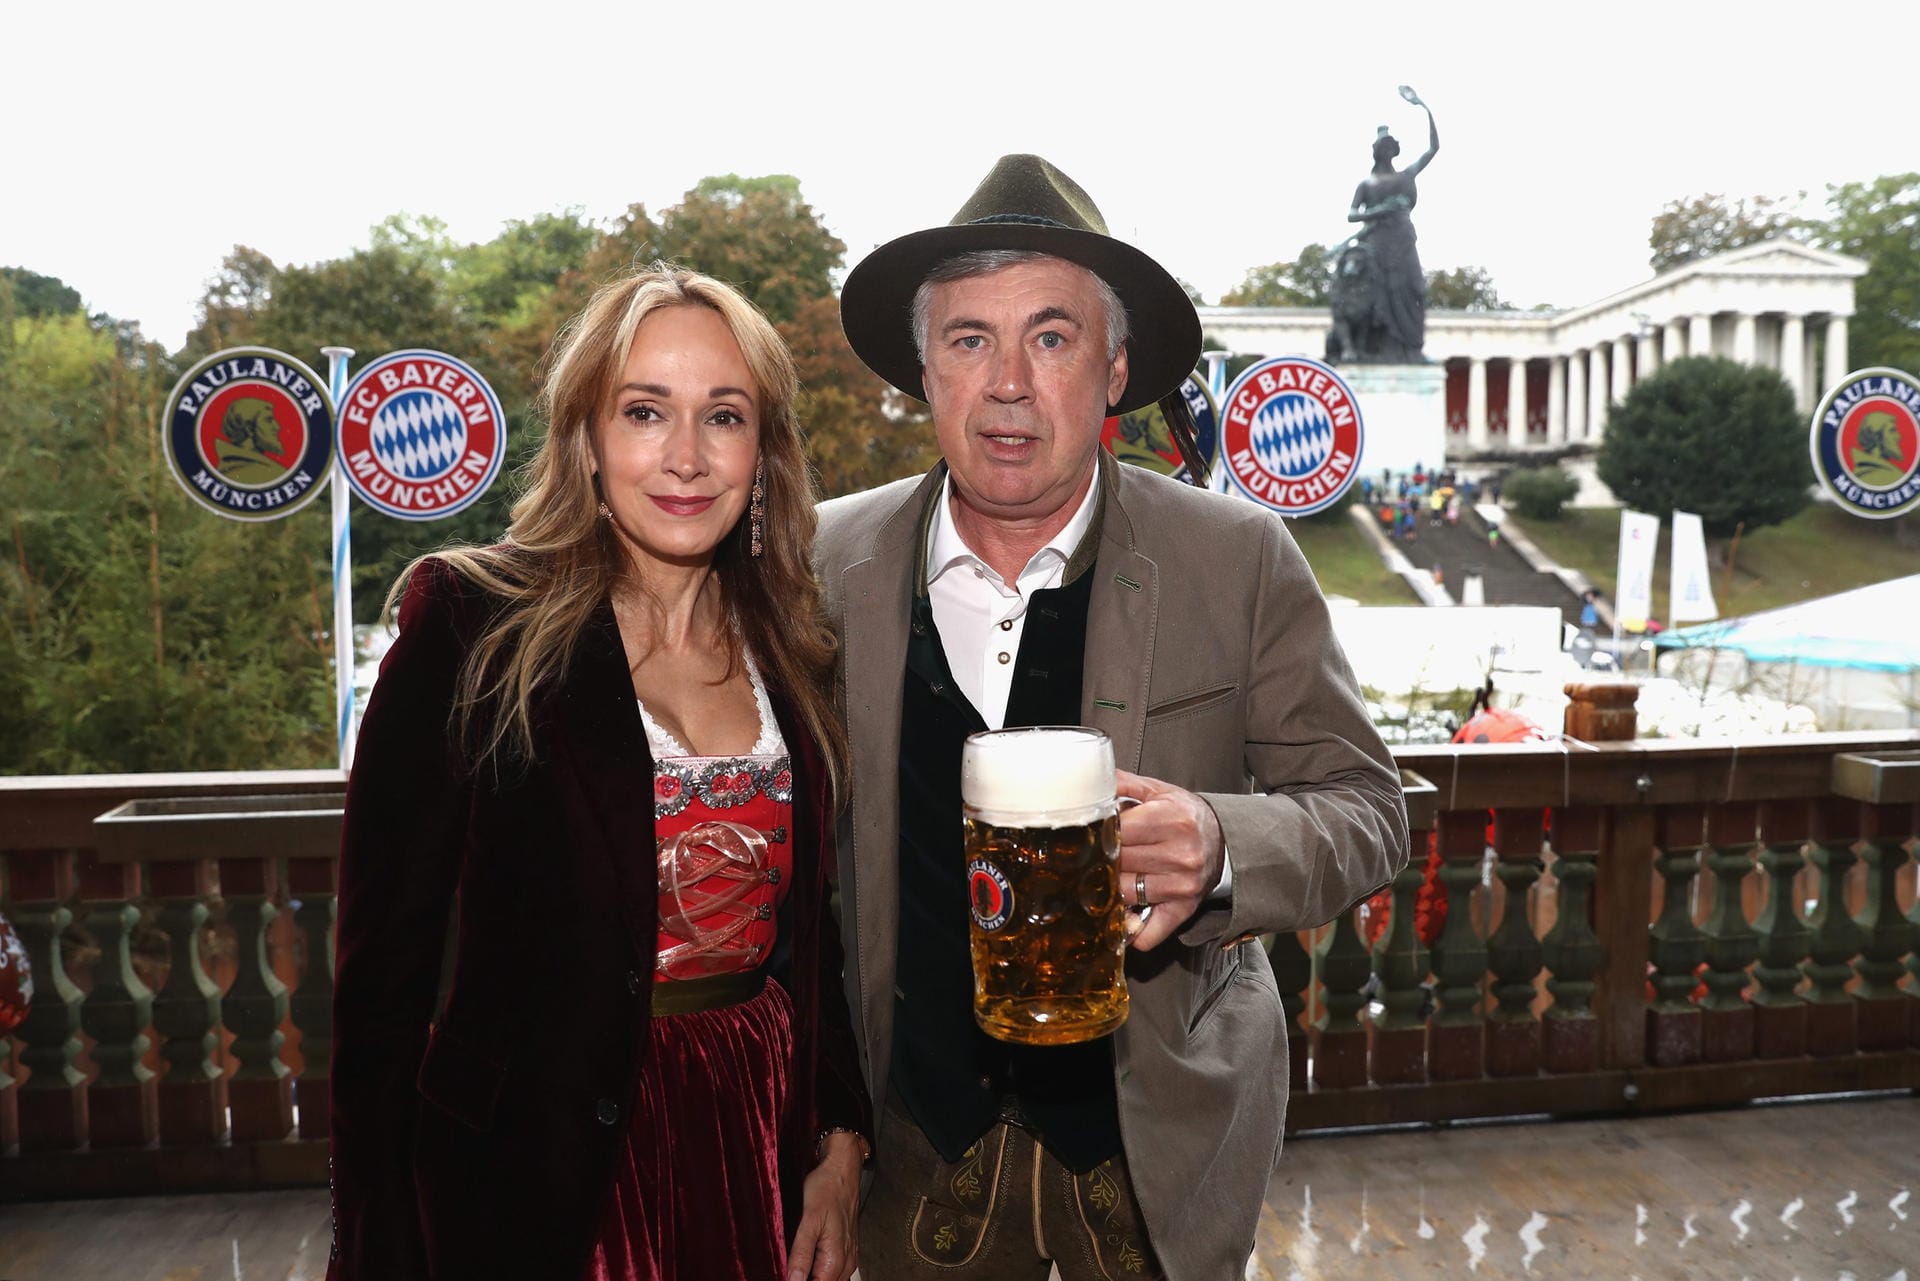 Am 2. Oktober fand der traditionelle Wiesn-Besuch des FC Bayern statt. Mit von der Partie war zum ersten Mal der neue Trainer Carlo Ancelotti samt Ehefrau Mariann.